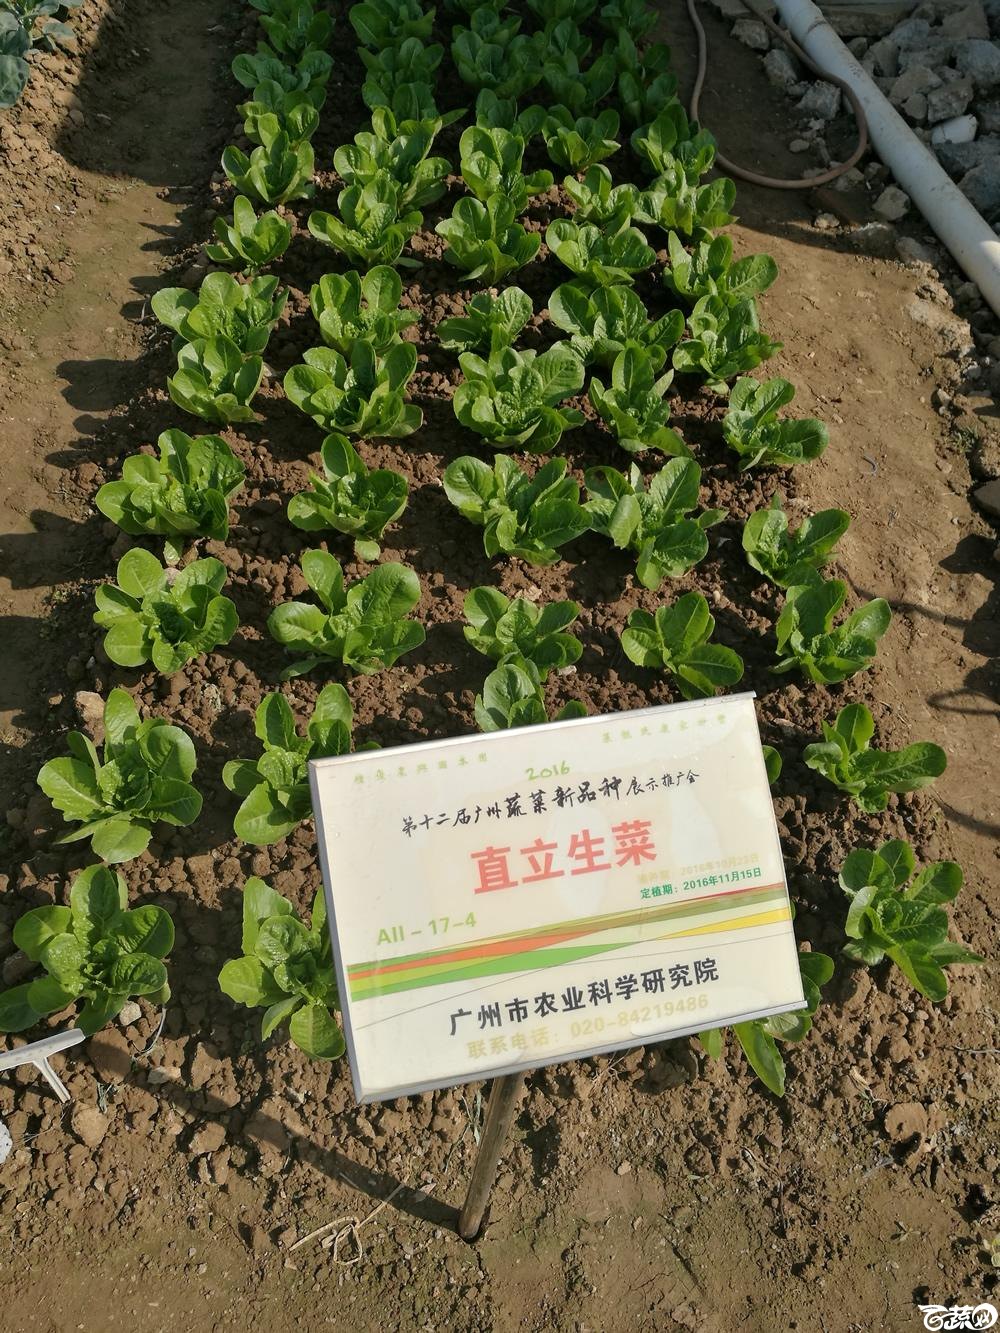 2016年12届广州蔬菜新品种展示会,广州市农科院直立生菜_006.jpg